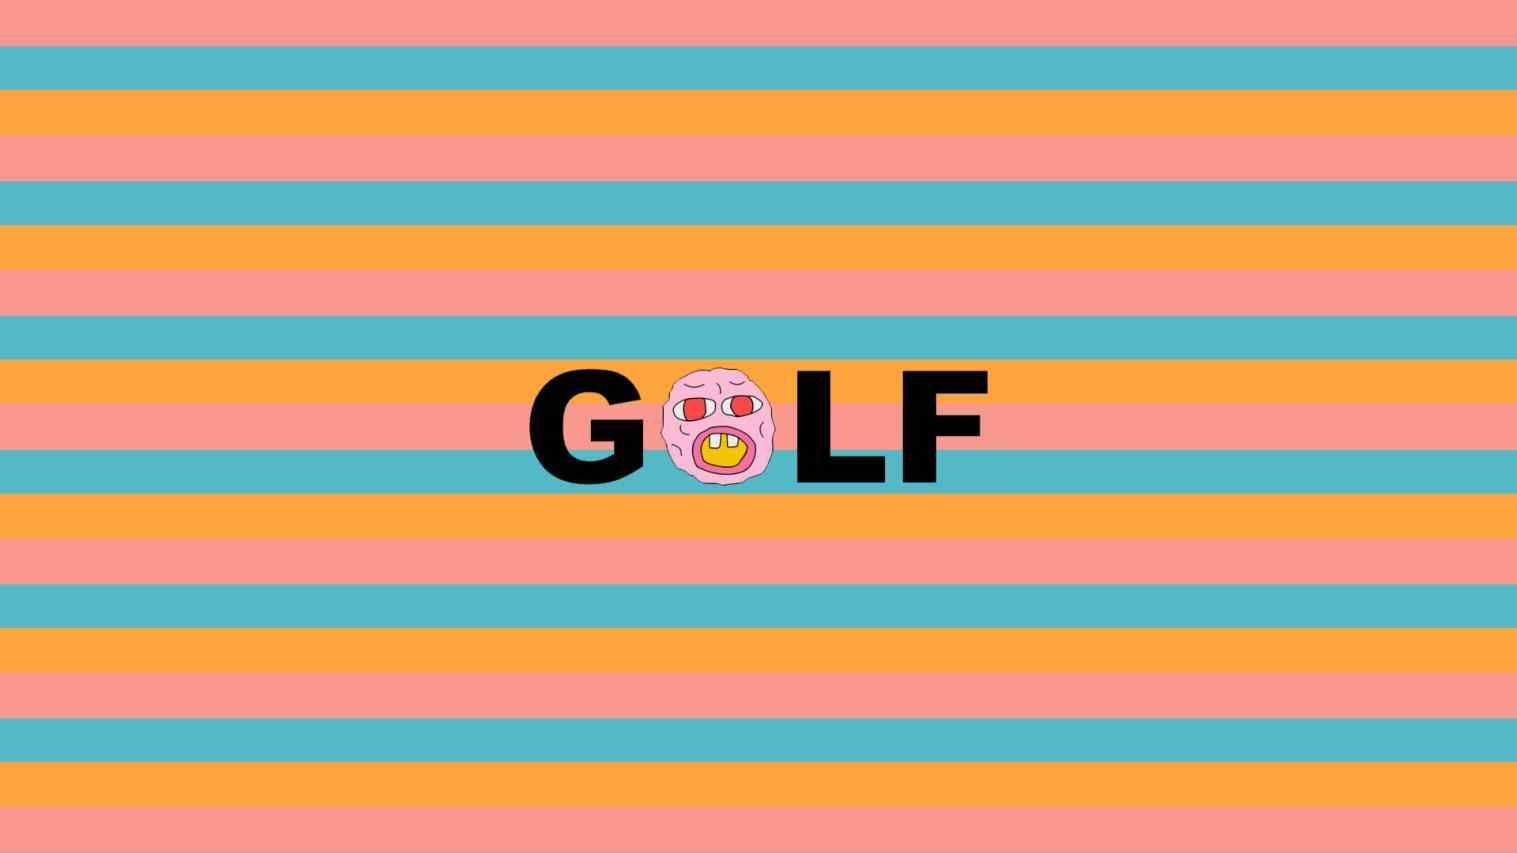 Golf Wang Logo - golf wang logo wallpaper iphone group pictures rhucatxcat pin by ...